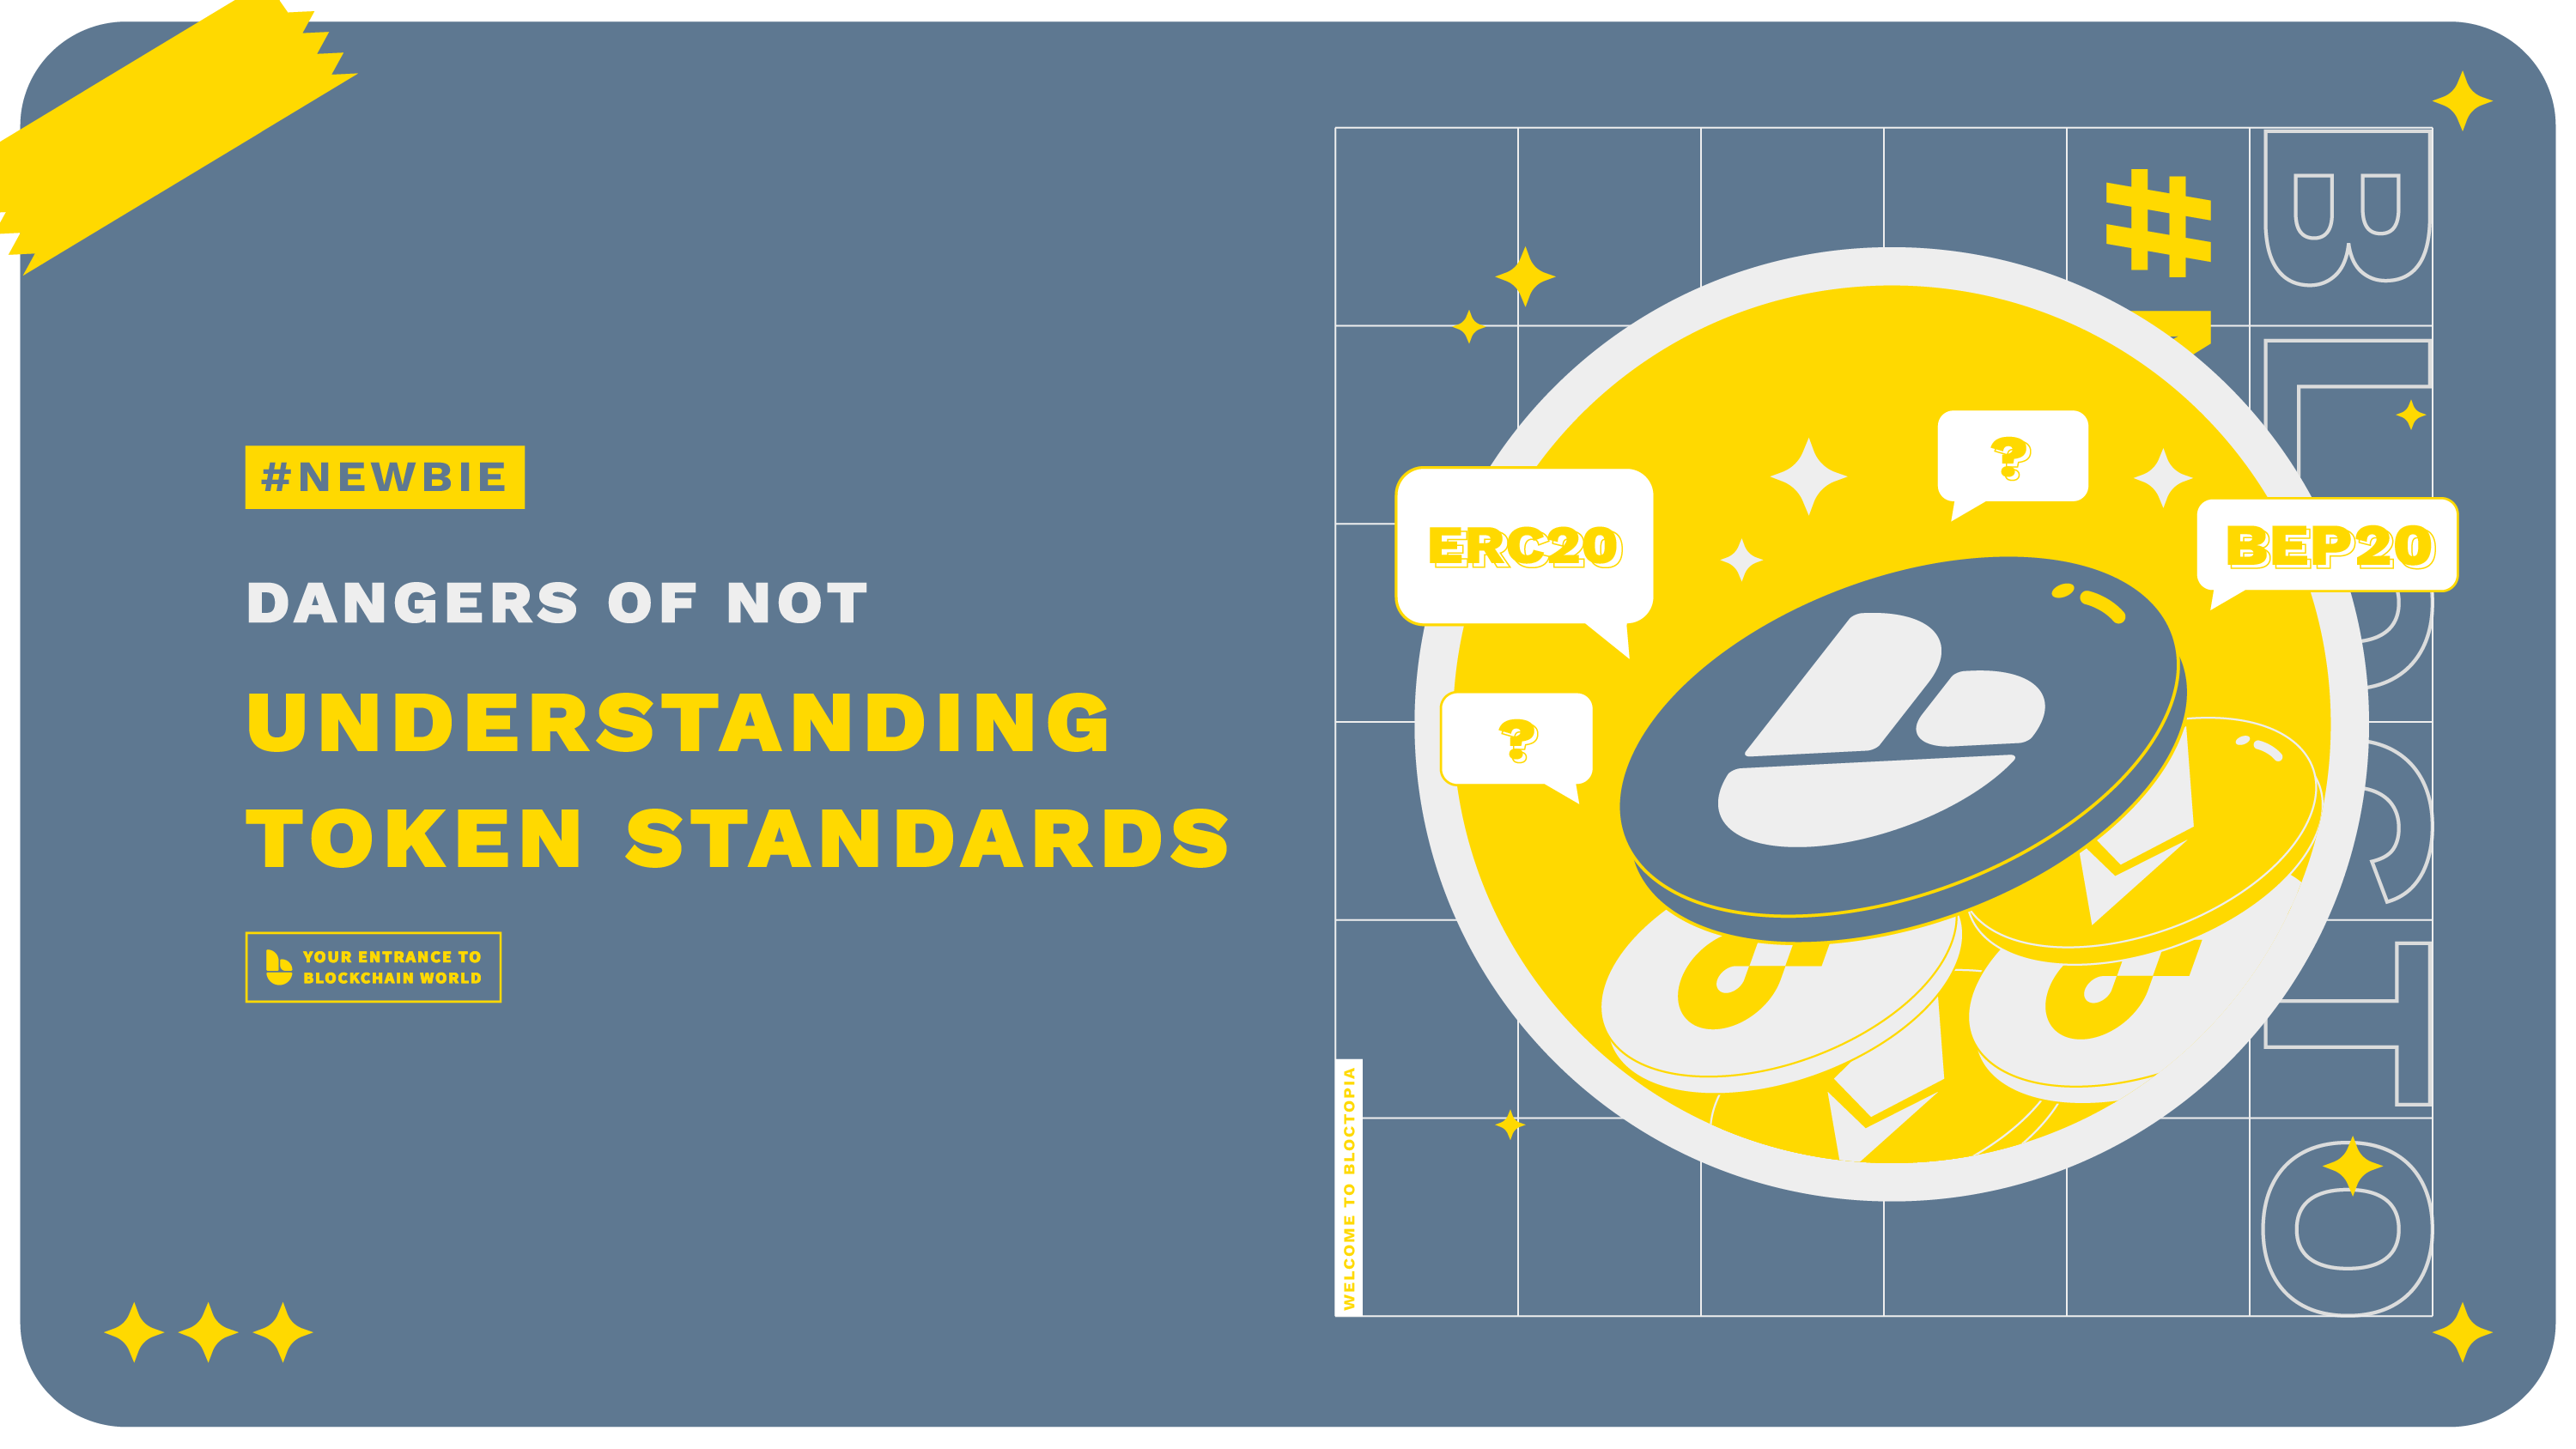 The Danger of Not Understanding Token Standards